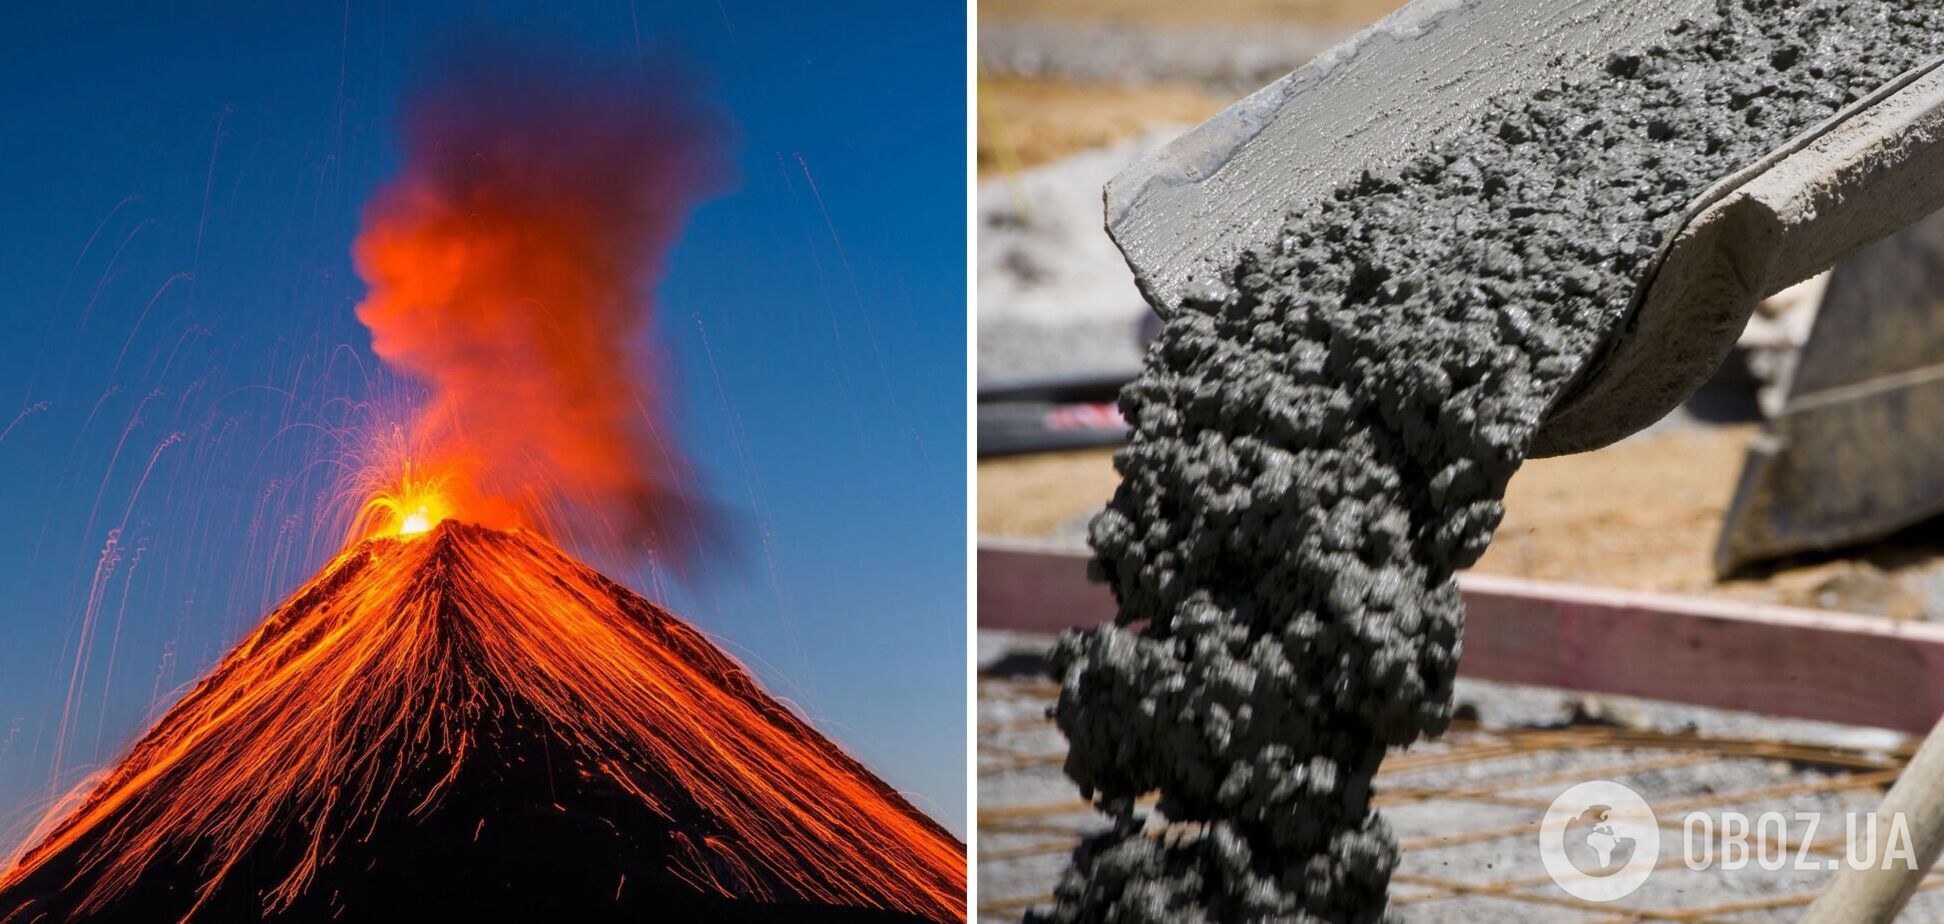 Человечество могло бы остановить извержение вулканов, залив их бетоном: но это очень плохая идея